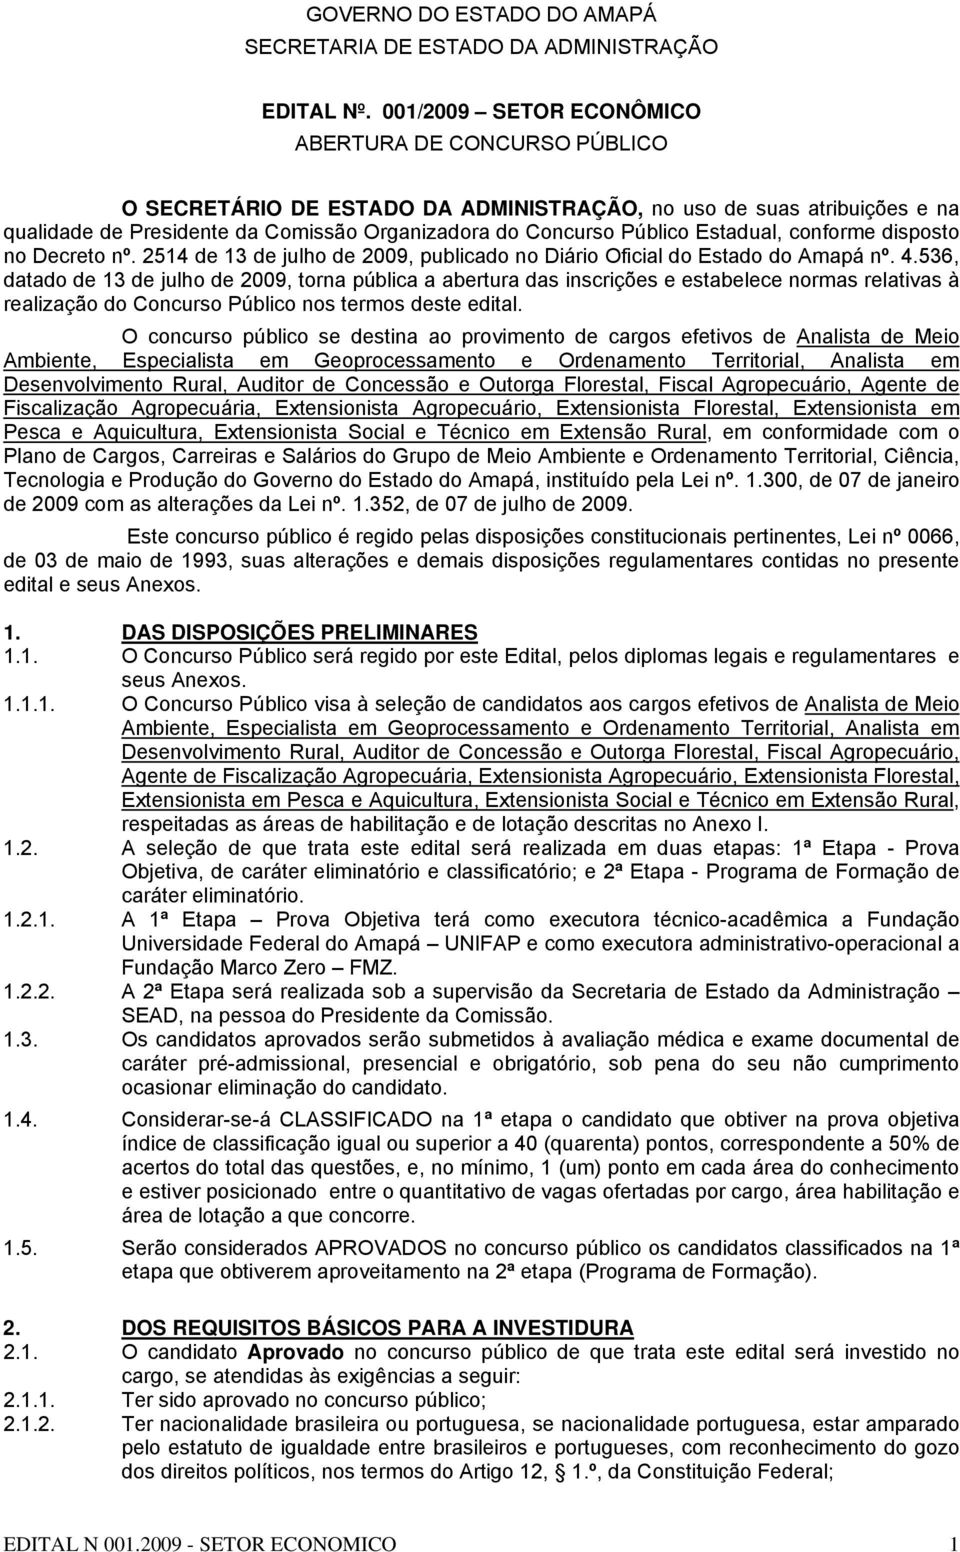 Estadual, conforme disposto no Decreto nº. 2514 de 13 de julho de 2009, publicado no Diário Oficial do Estado do Amapá nº. 4.